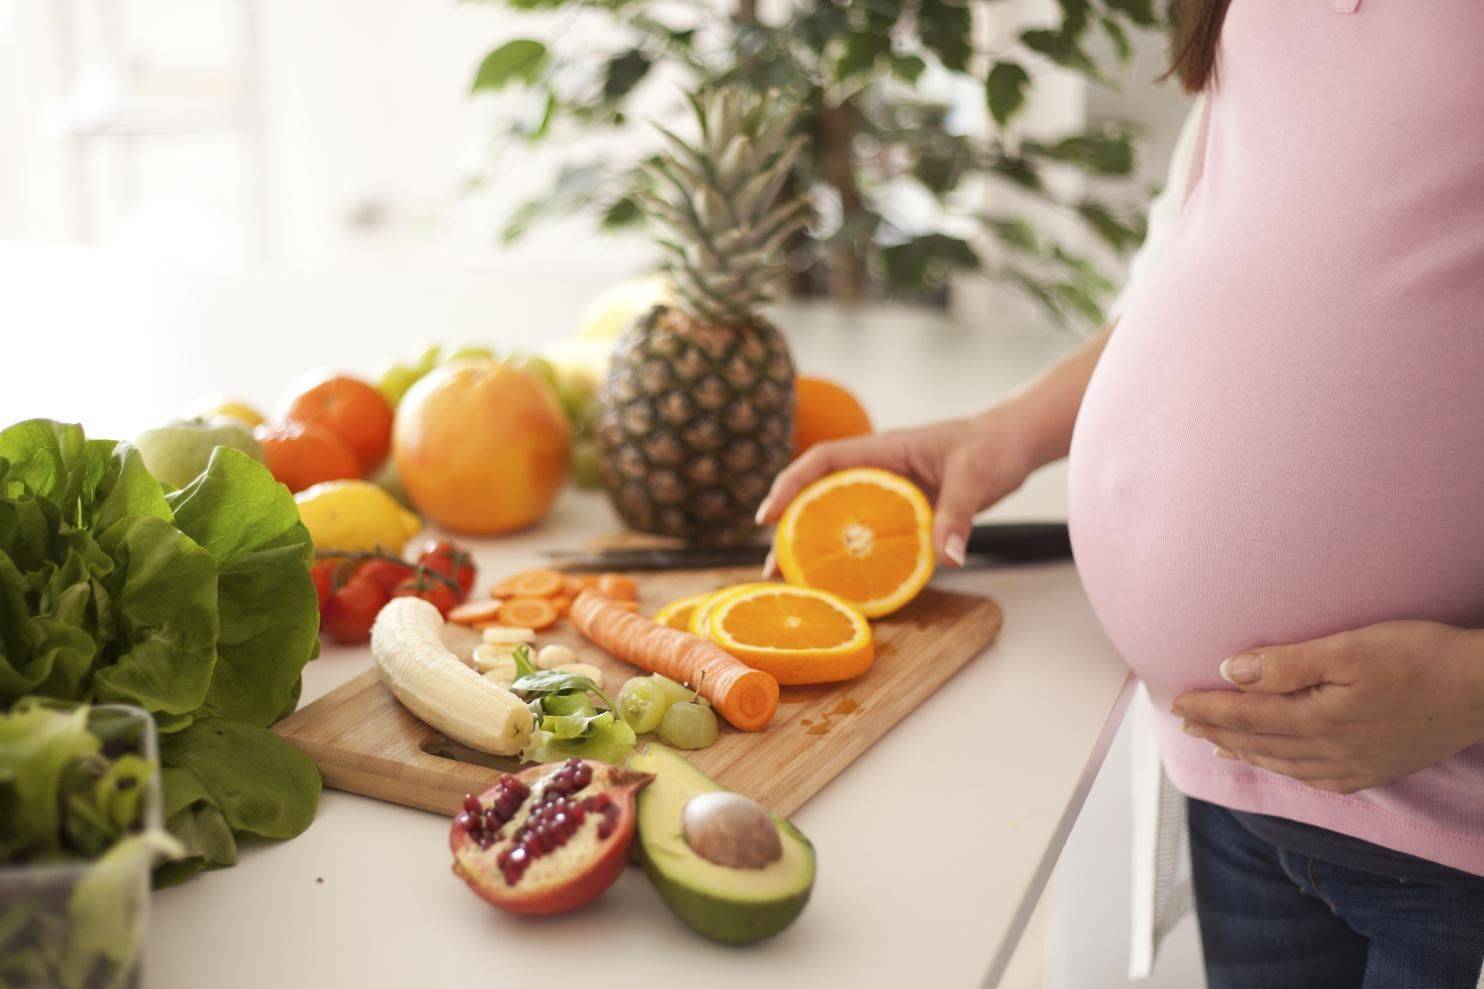 Melon en el embarazo